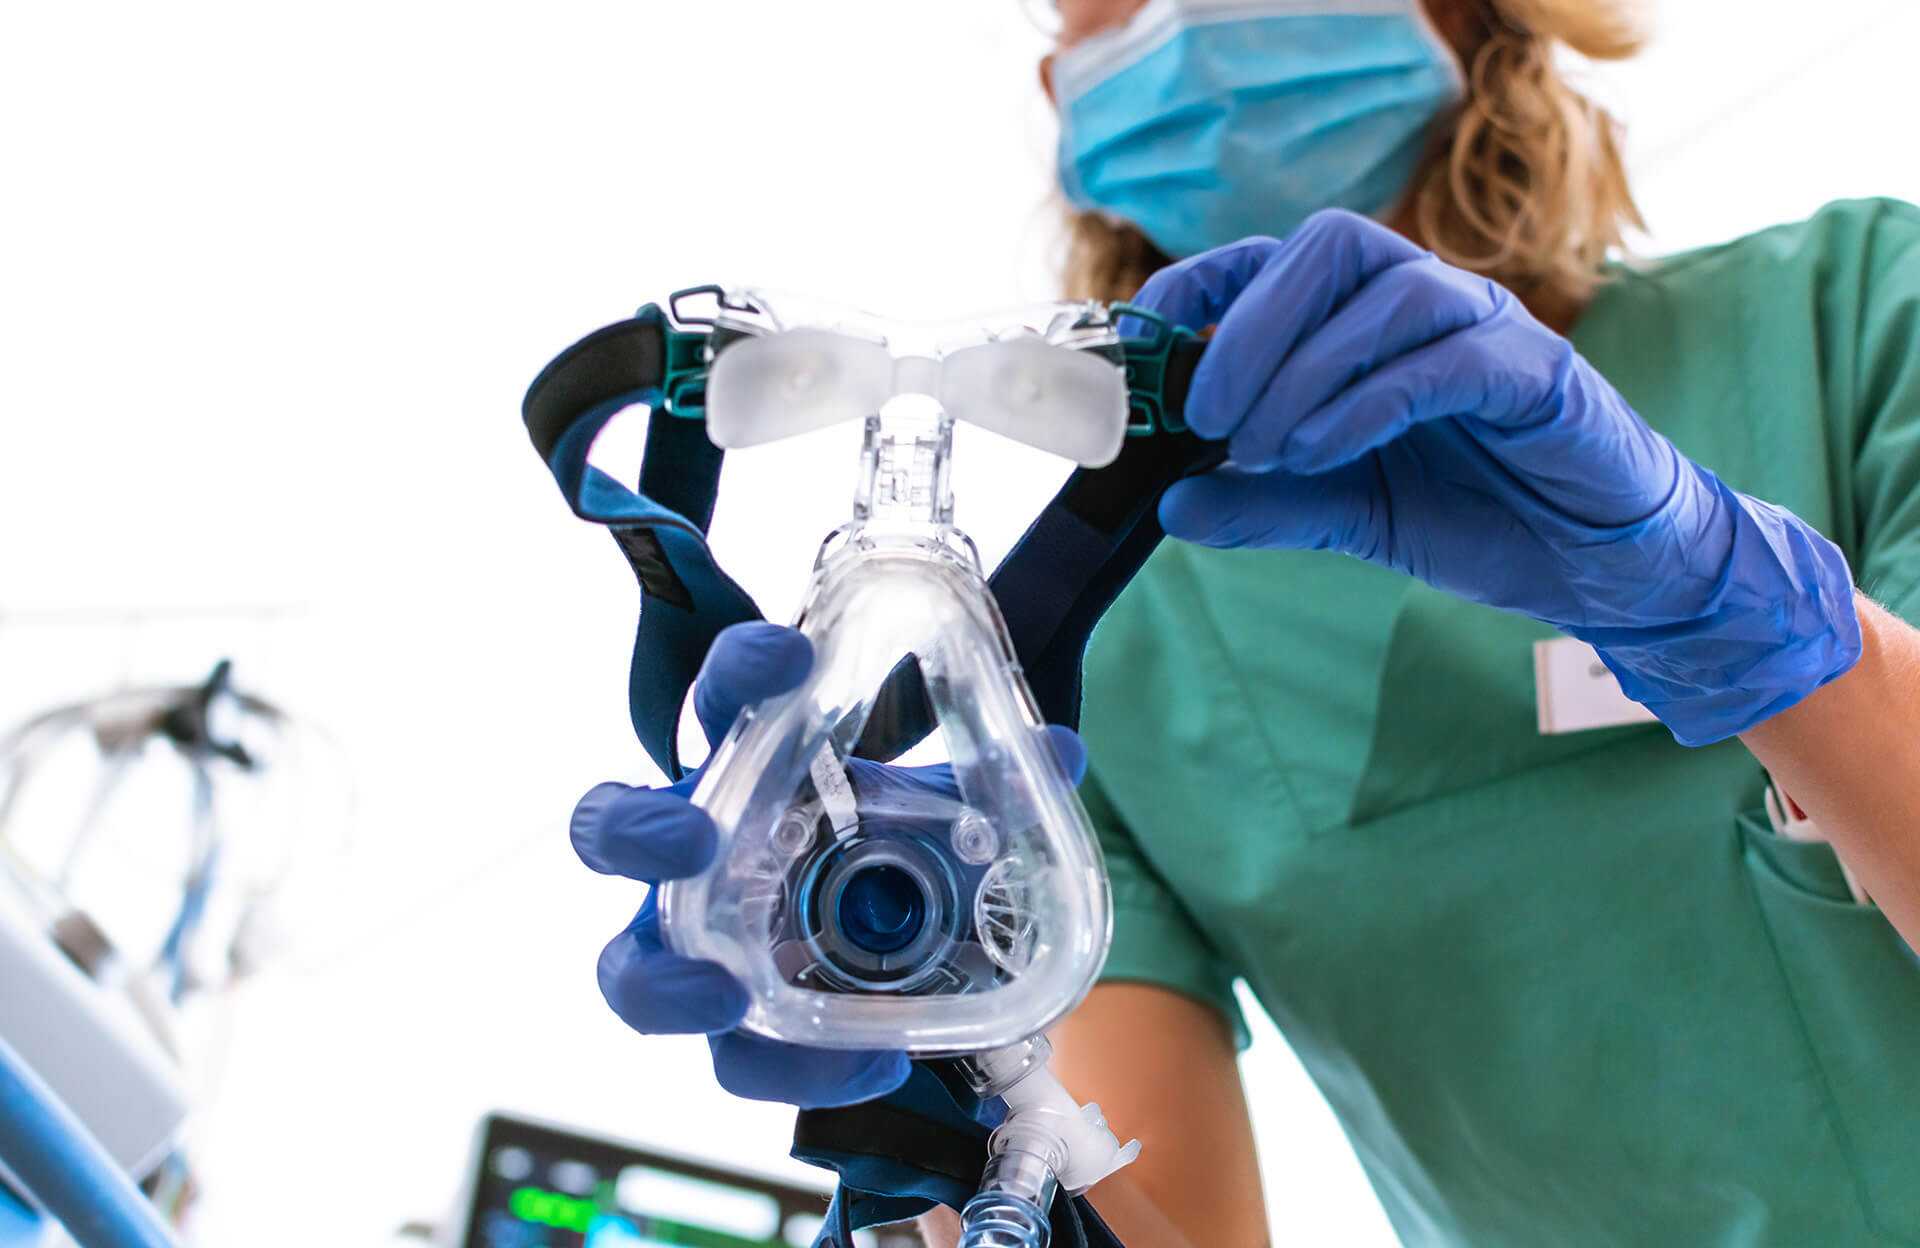 Aquellas personas que presentan dificultades respiratorias agudas o críticas requieren ventilación avanzada en hospitales